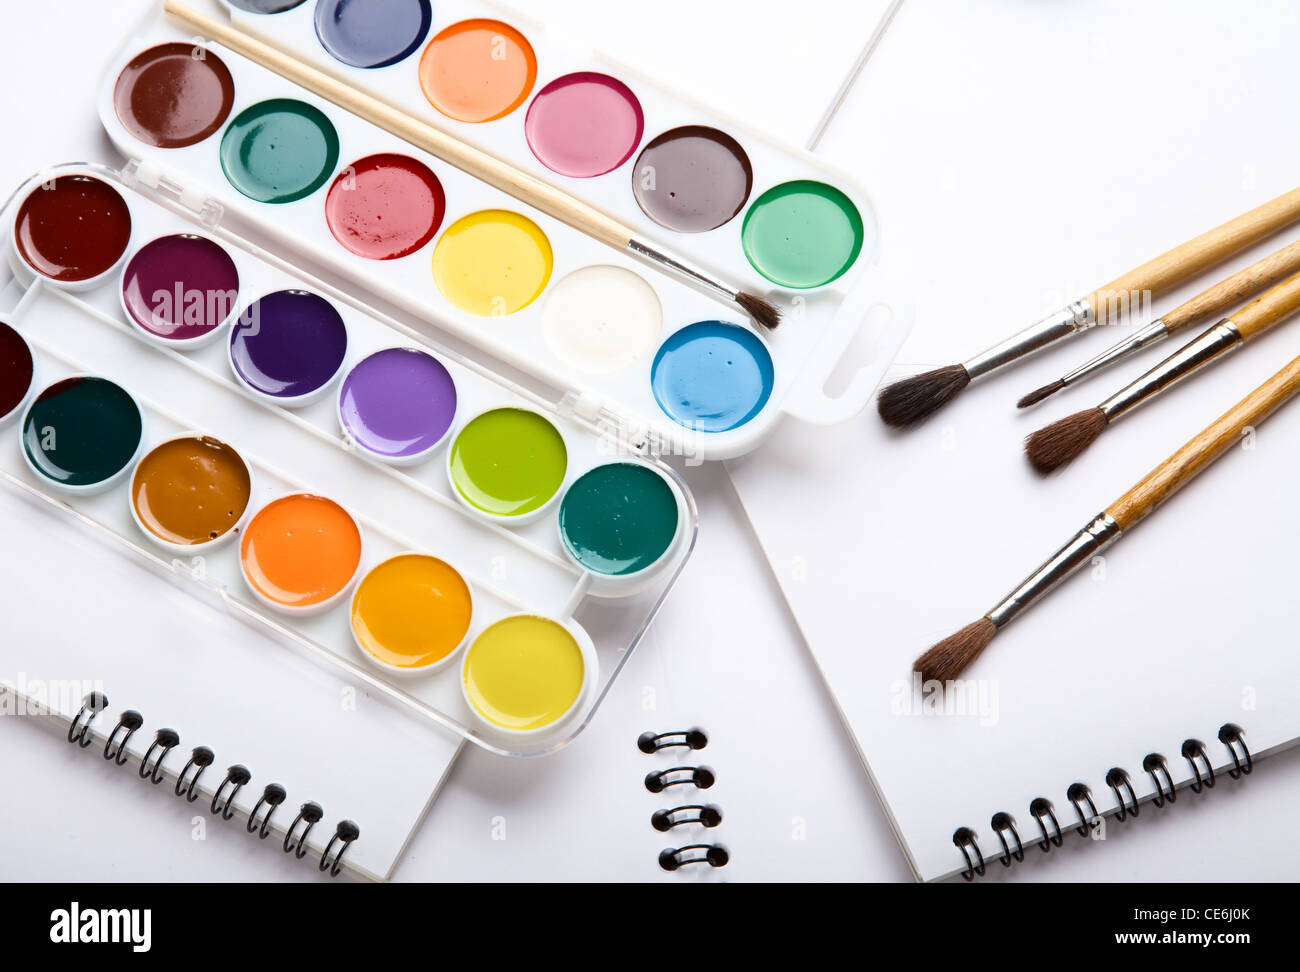 Peintures de couleur de l'eau albums pinceau pour dessiner sur une table Banque D'Images